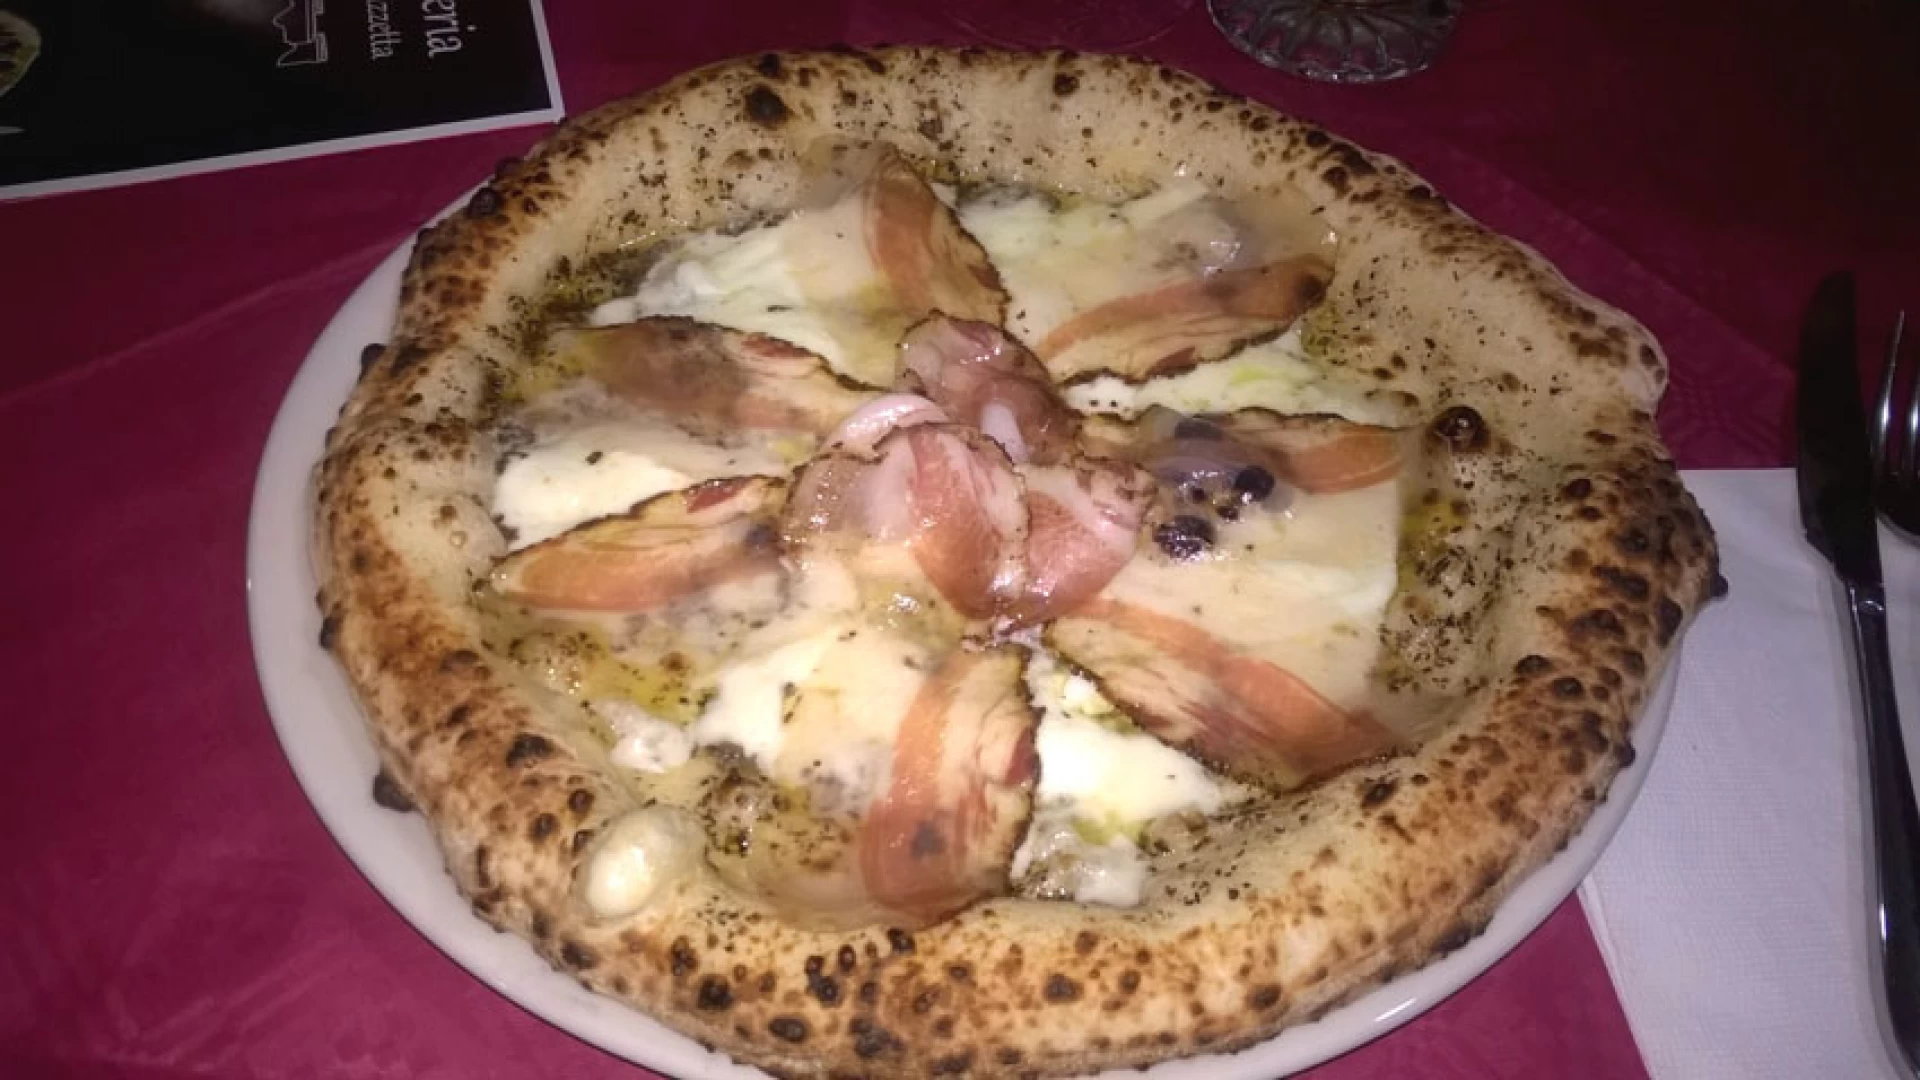 La recensione: pizza con guanciale al brandy, bufala e tartufo. L’invenzione molisana della Pizzeria La Piazzetta da Pasquale.